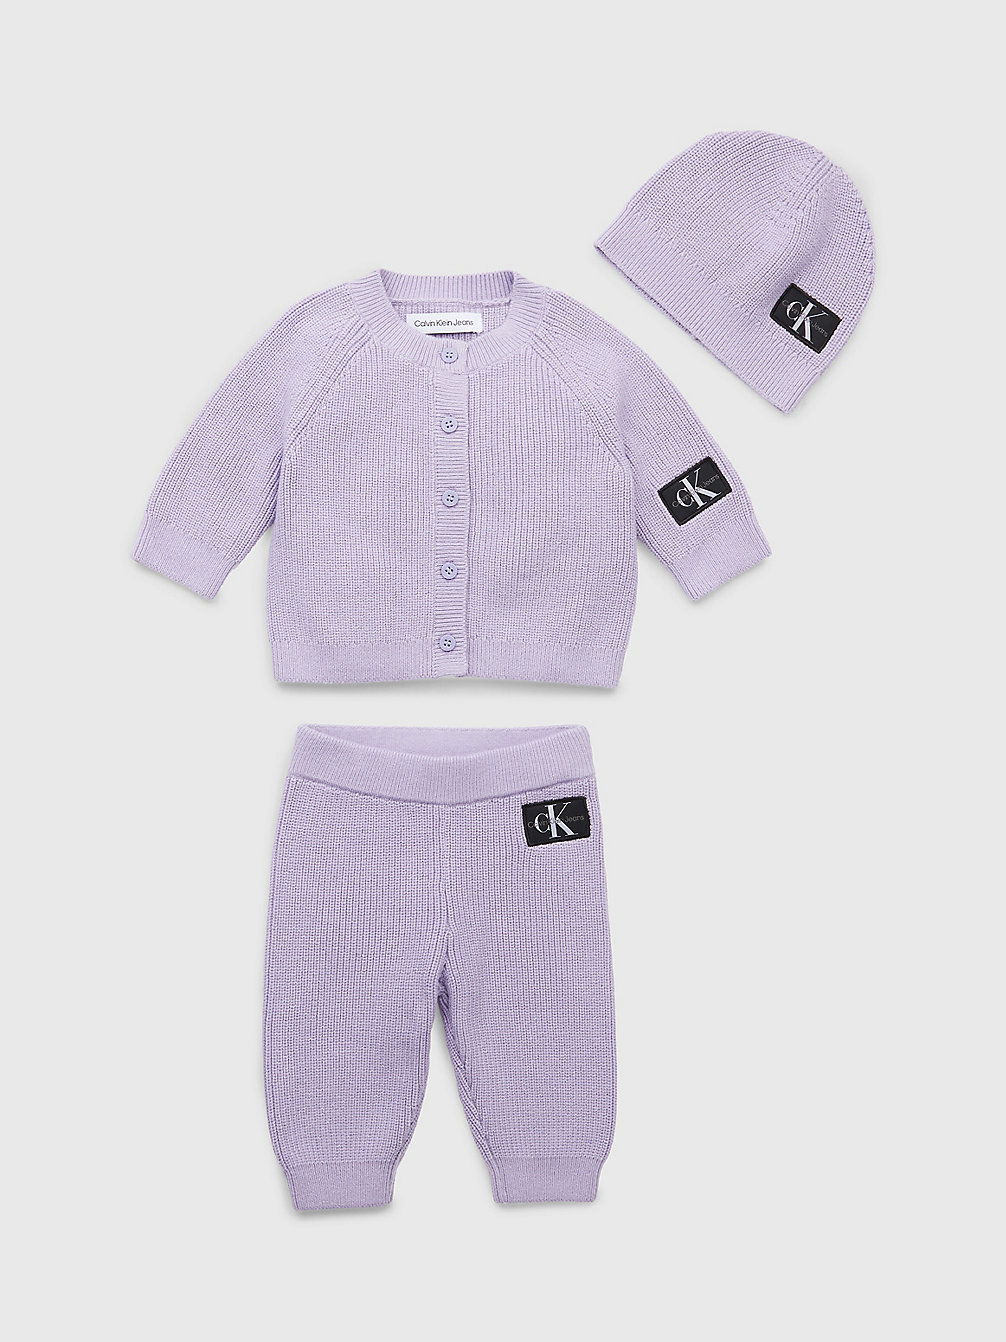 SMOKY LILAC Baby-Geschenkset Mit Trainingsanzug Und Mütze undefined newborn Calvin Klein